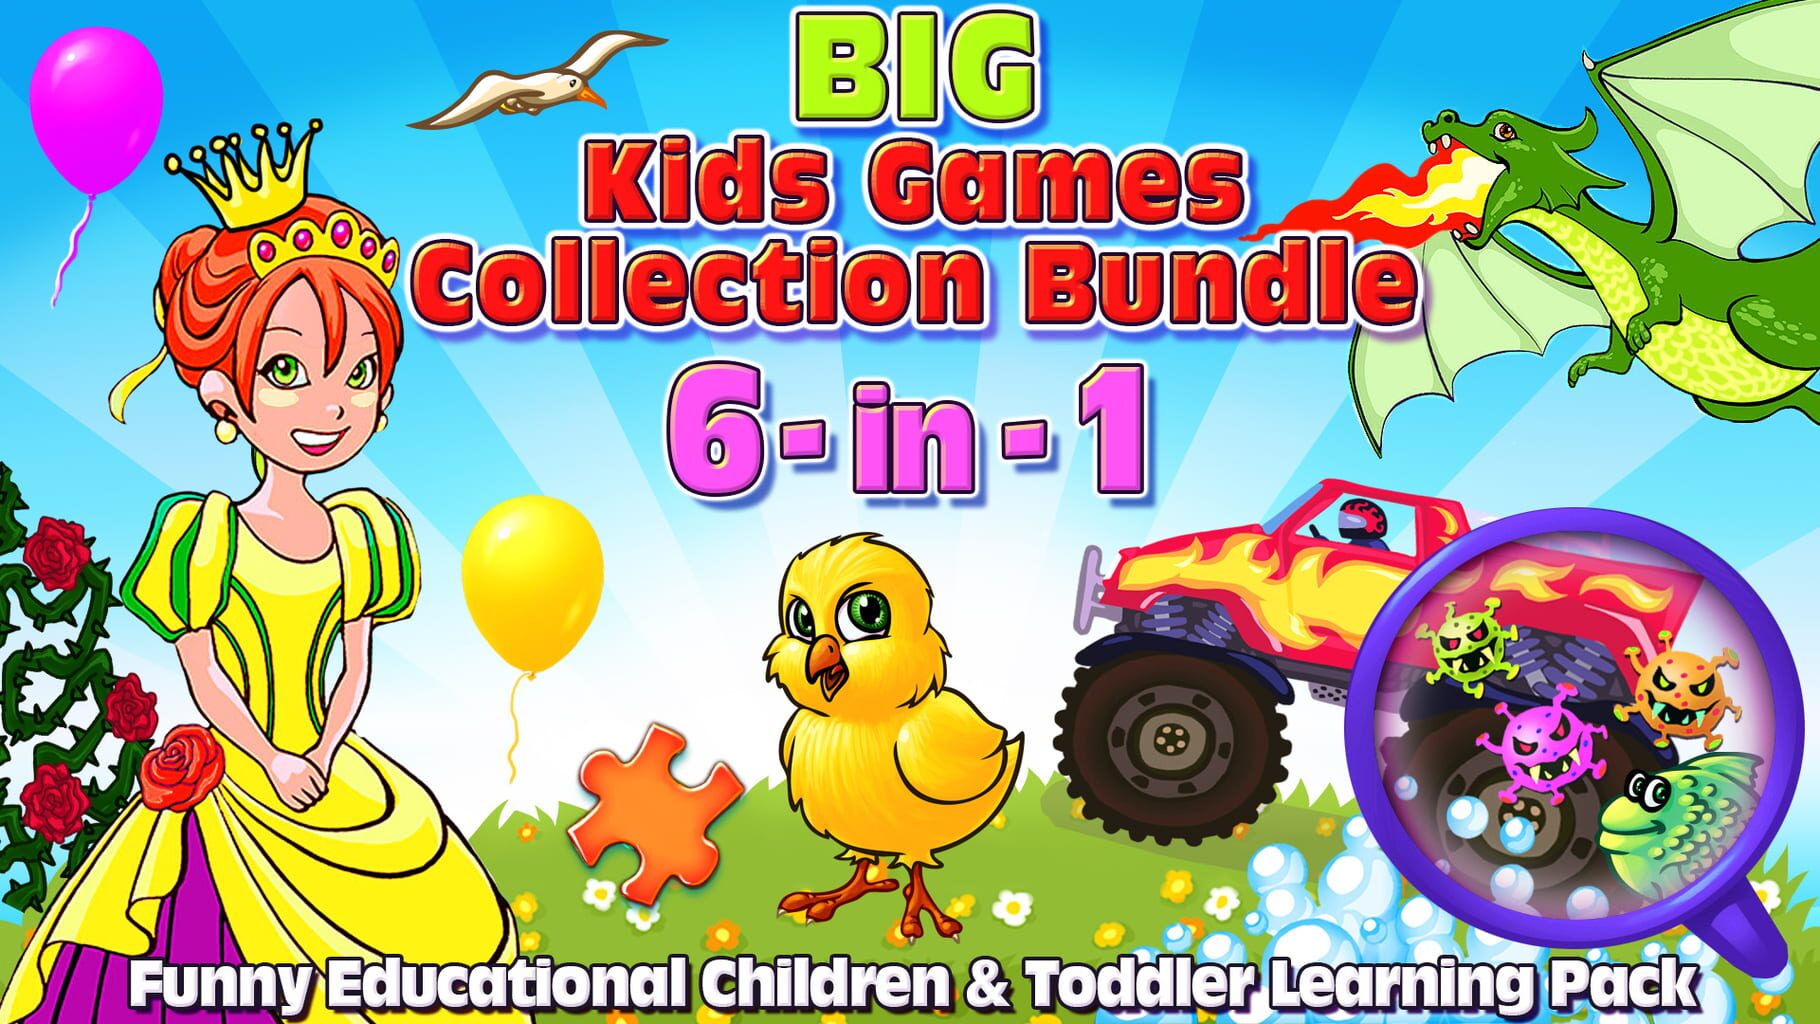 Big Kids Games Collection Bundle artwork